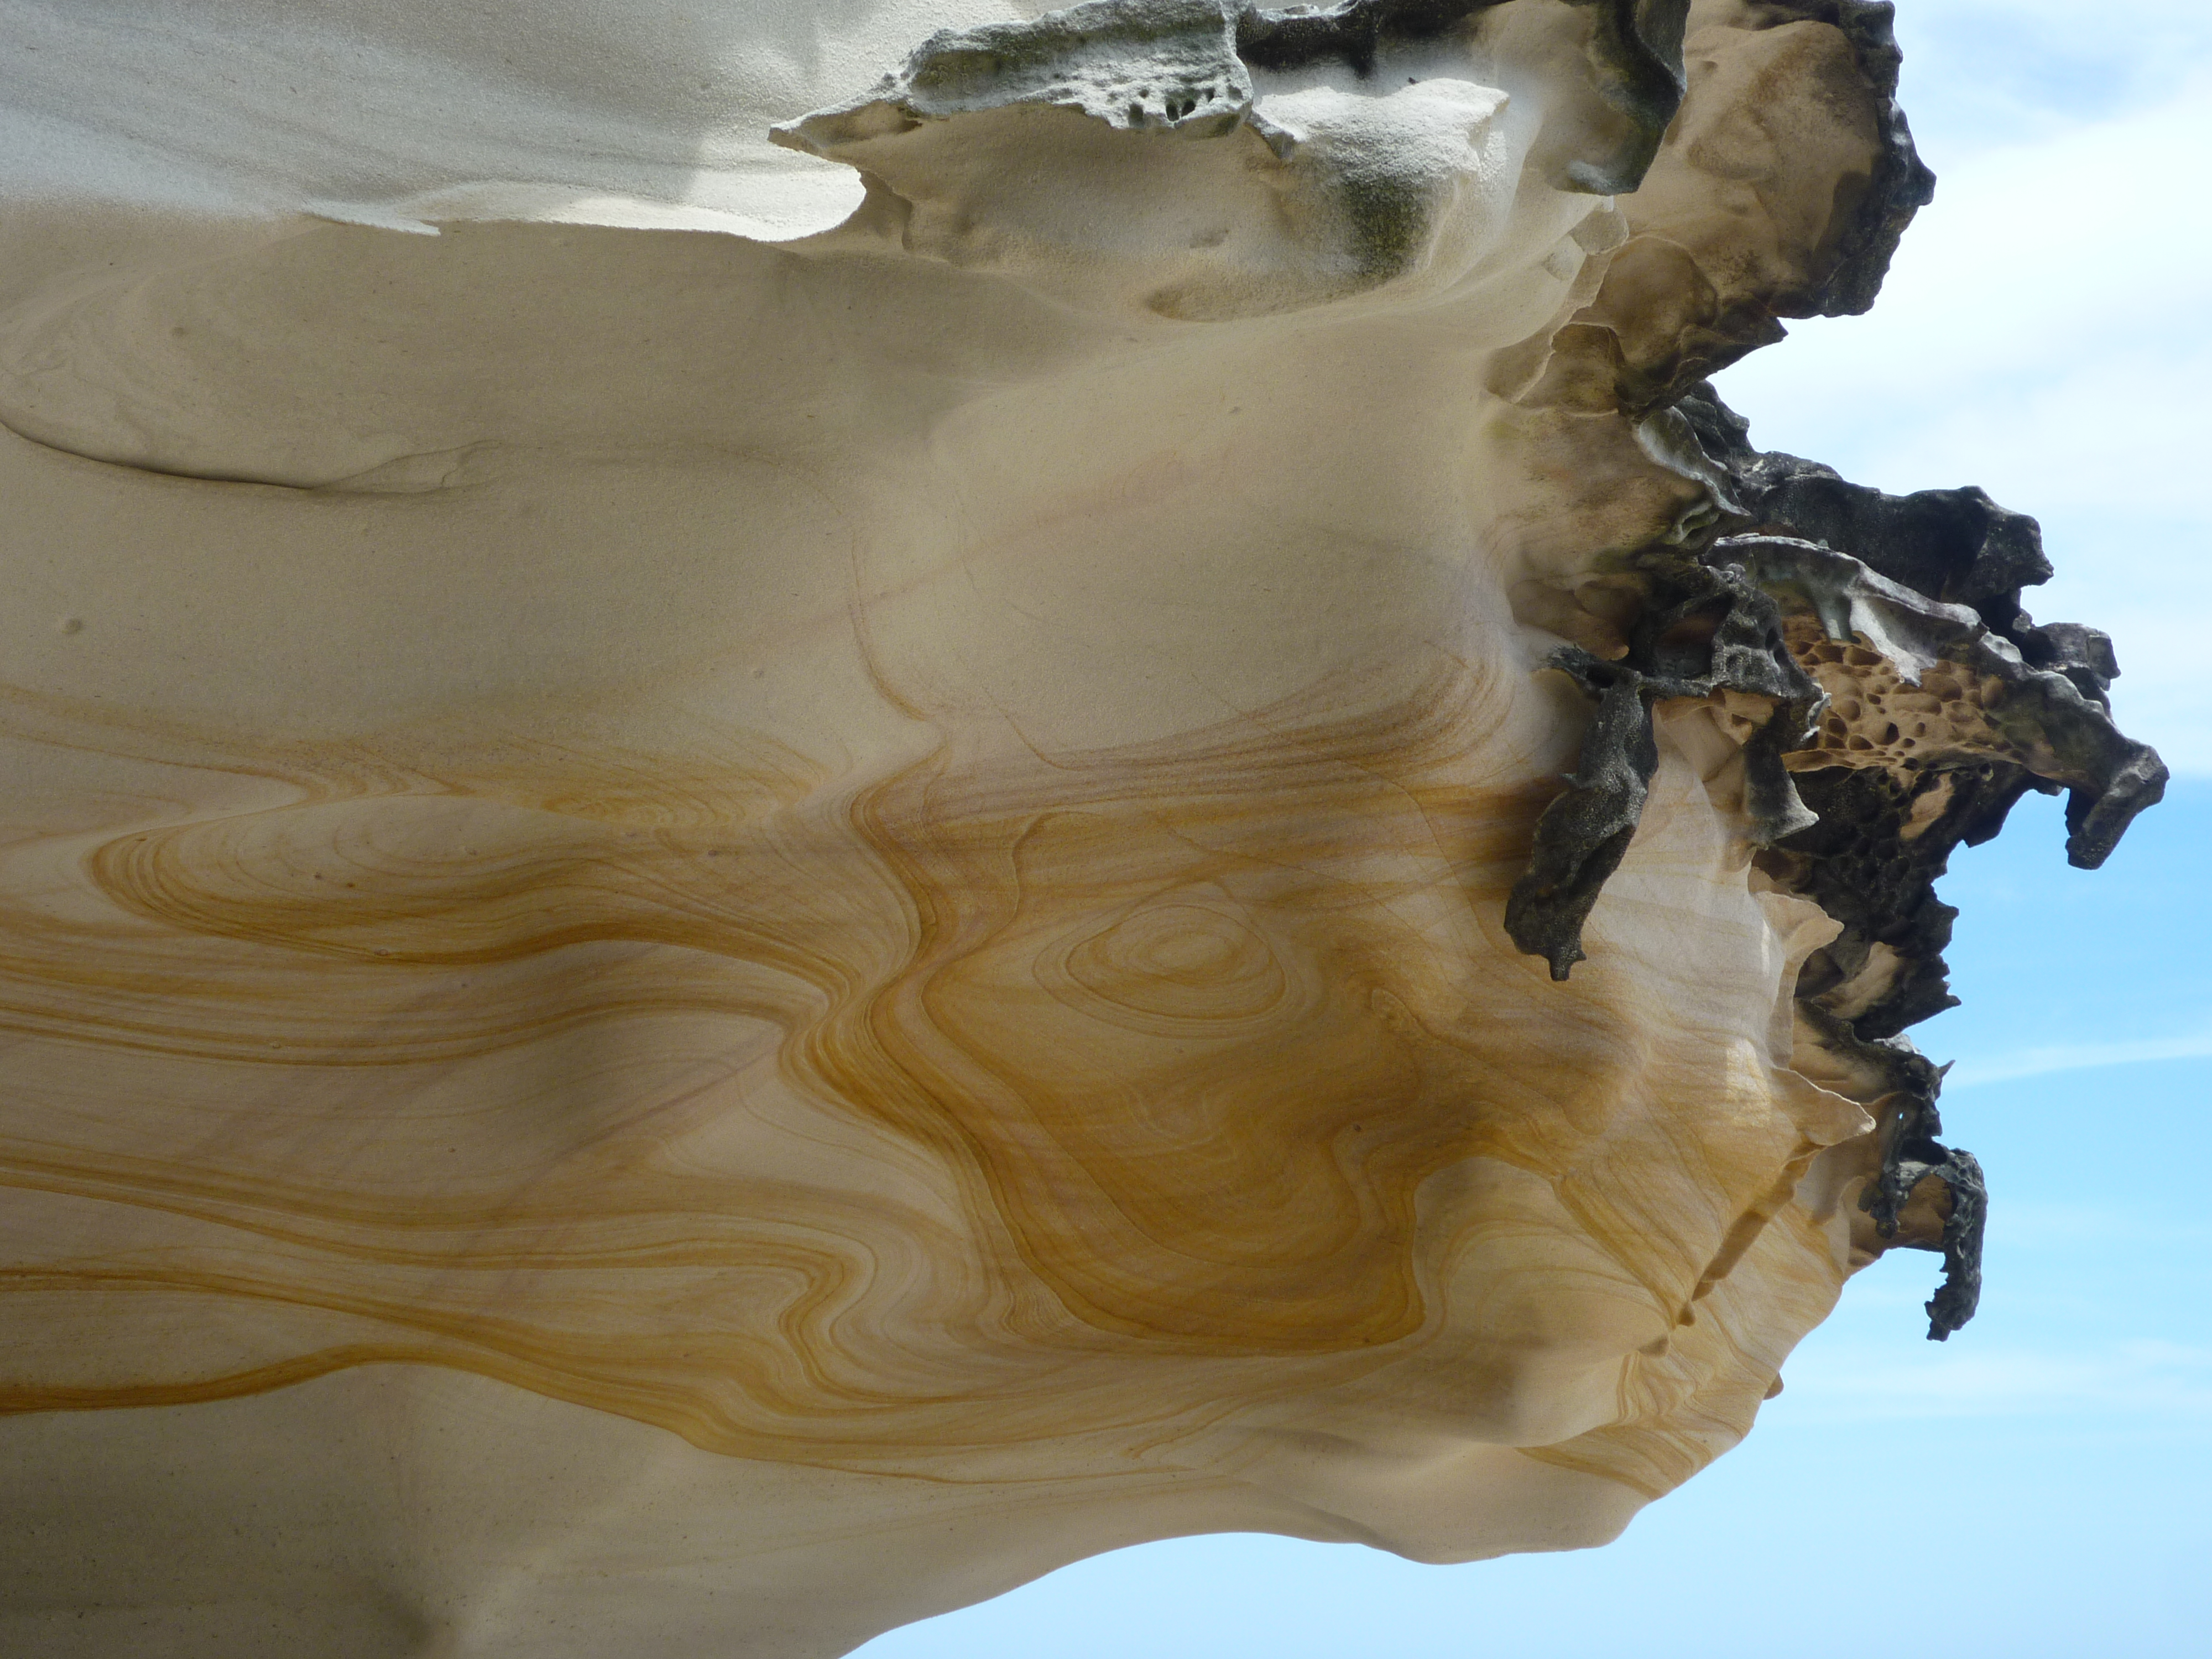 A sandstone formation at Tamara Beach, Sydney